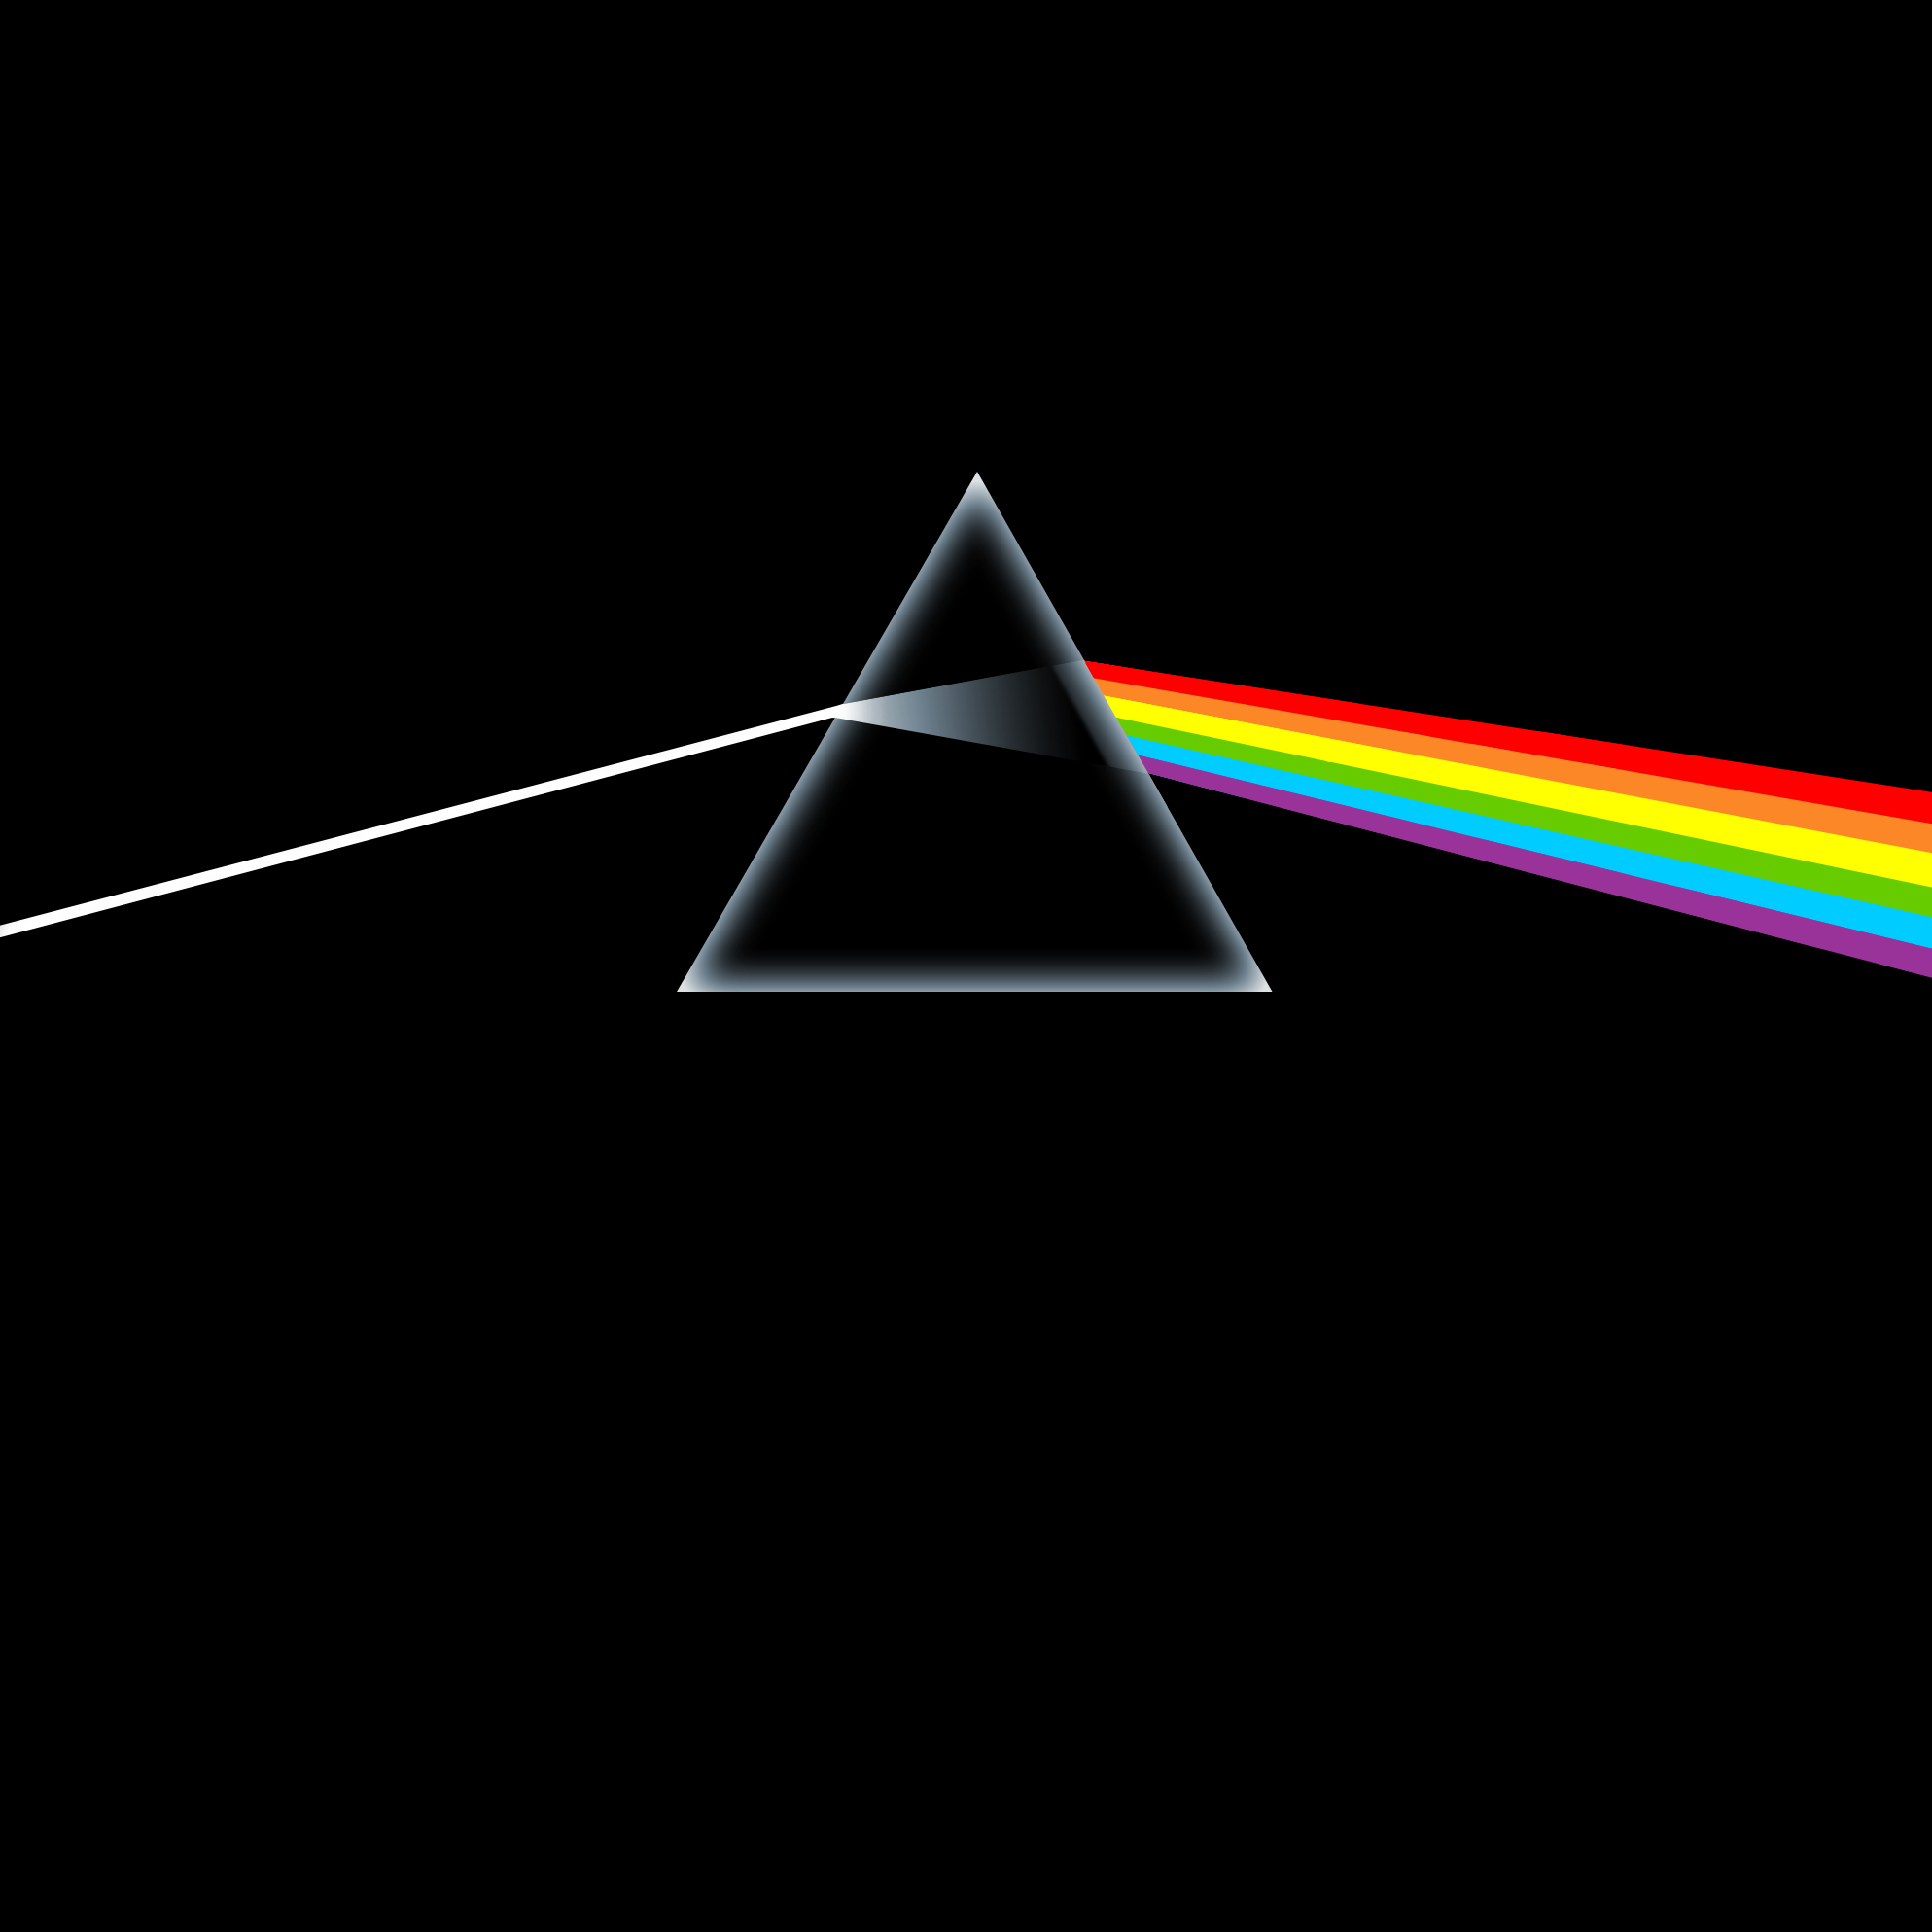 Download 80 Background Pink Floyd HD Terbaru